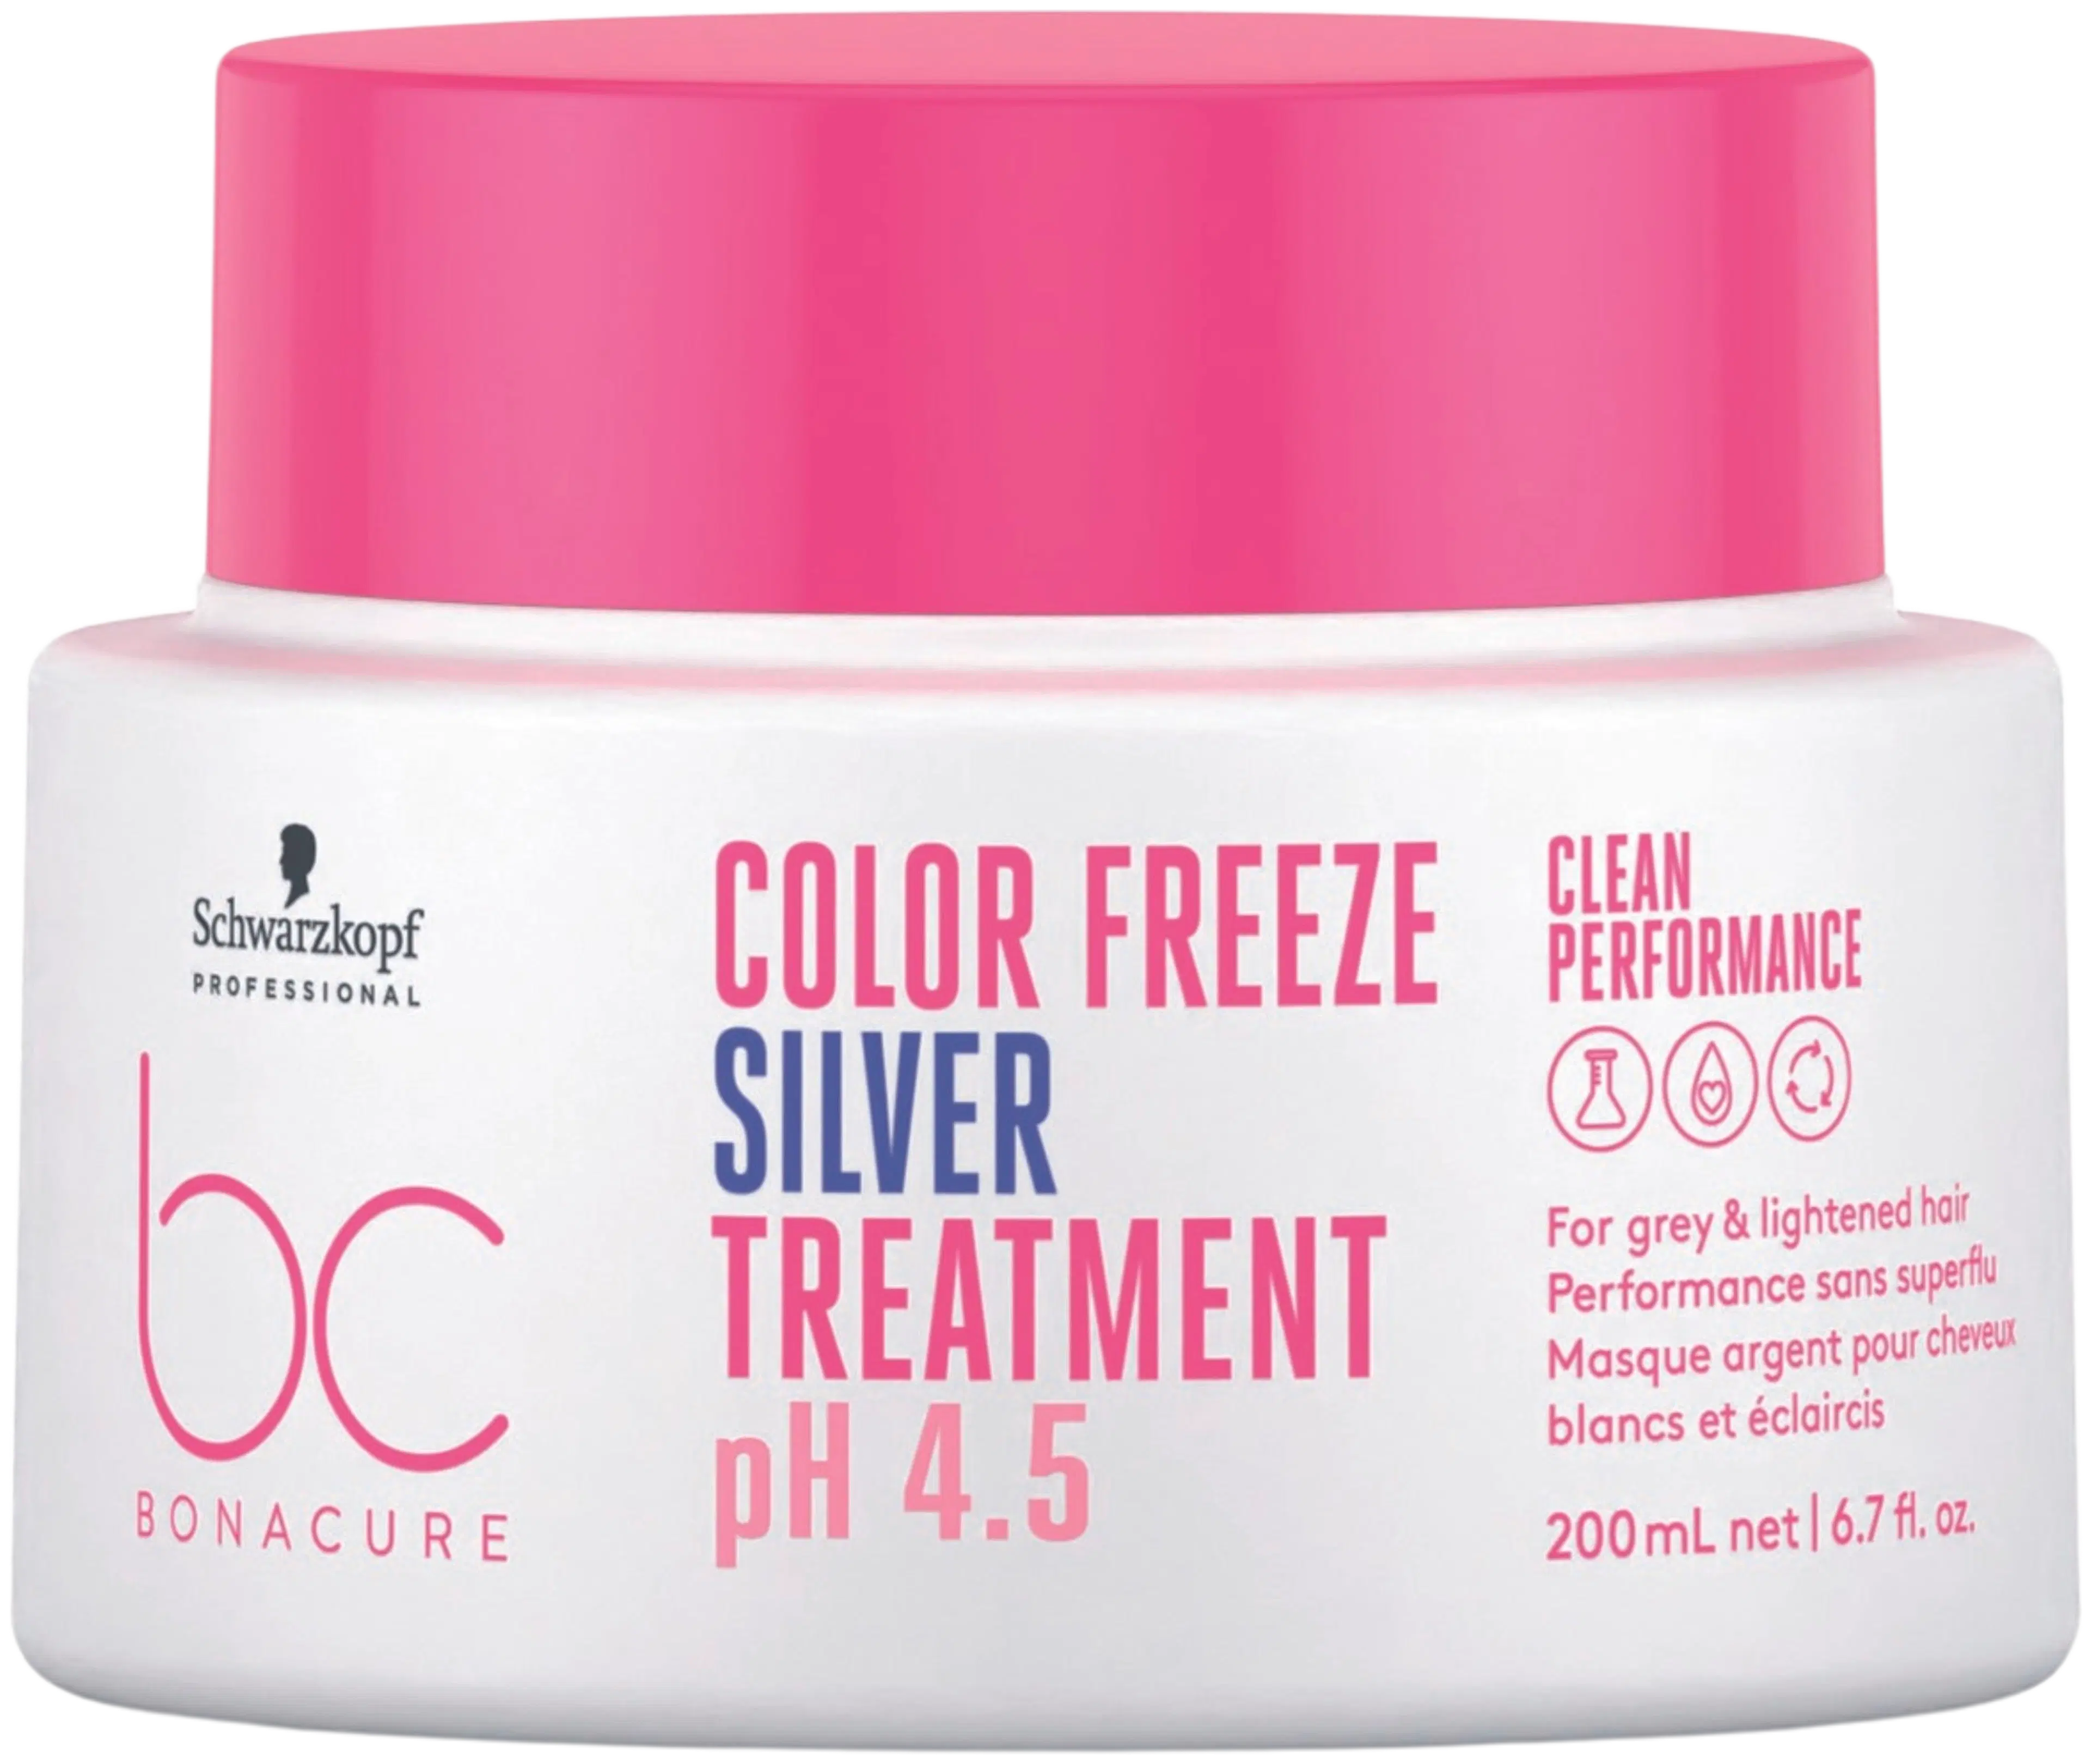 BC BONACURE Color Freeze Silver Treatment 200ml